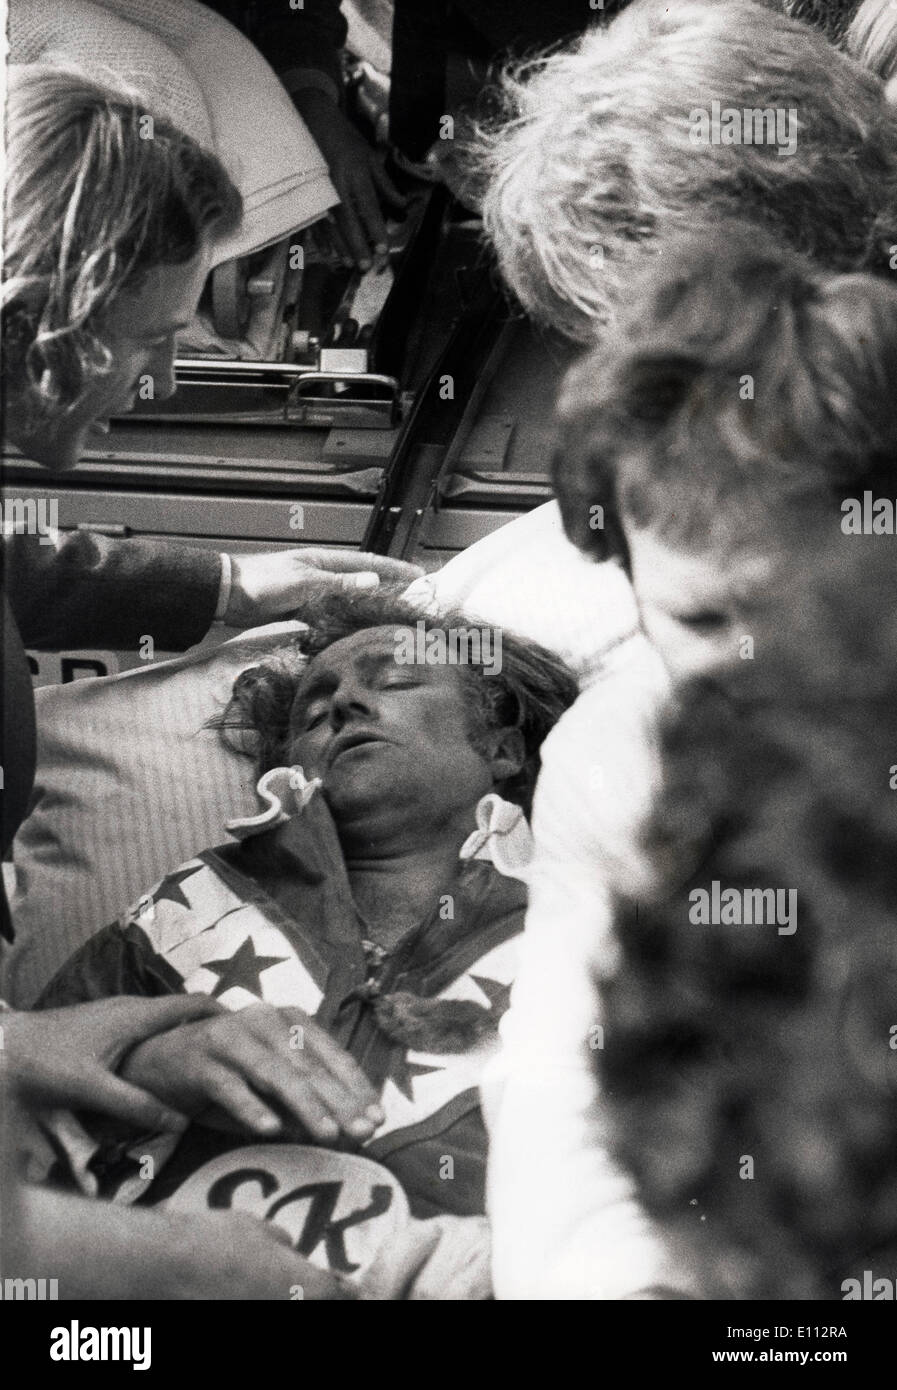 Daredevil Evel Knievel ricoverato in ospedale dopo il salto del bus Foto Stock